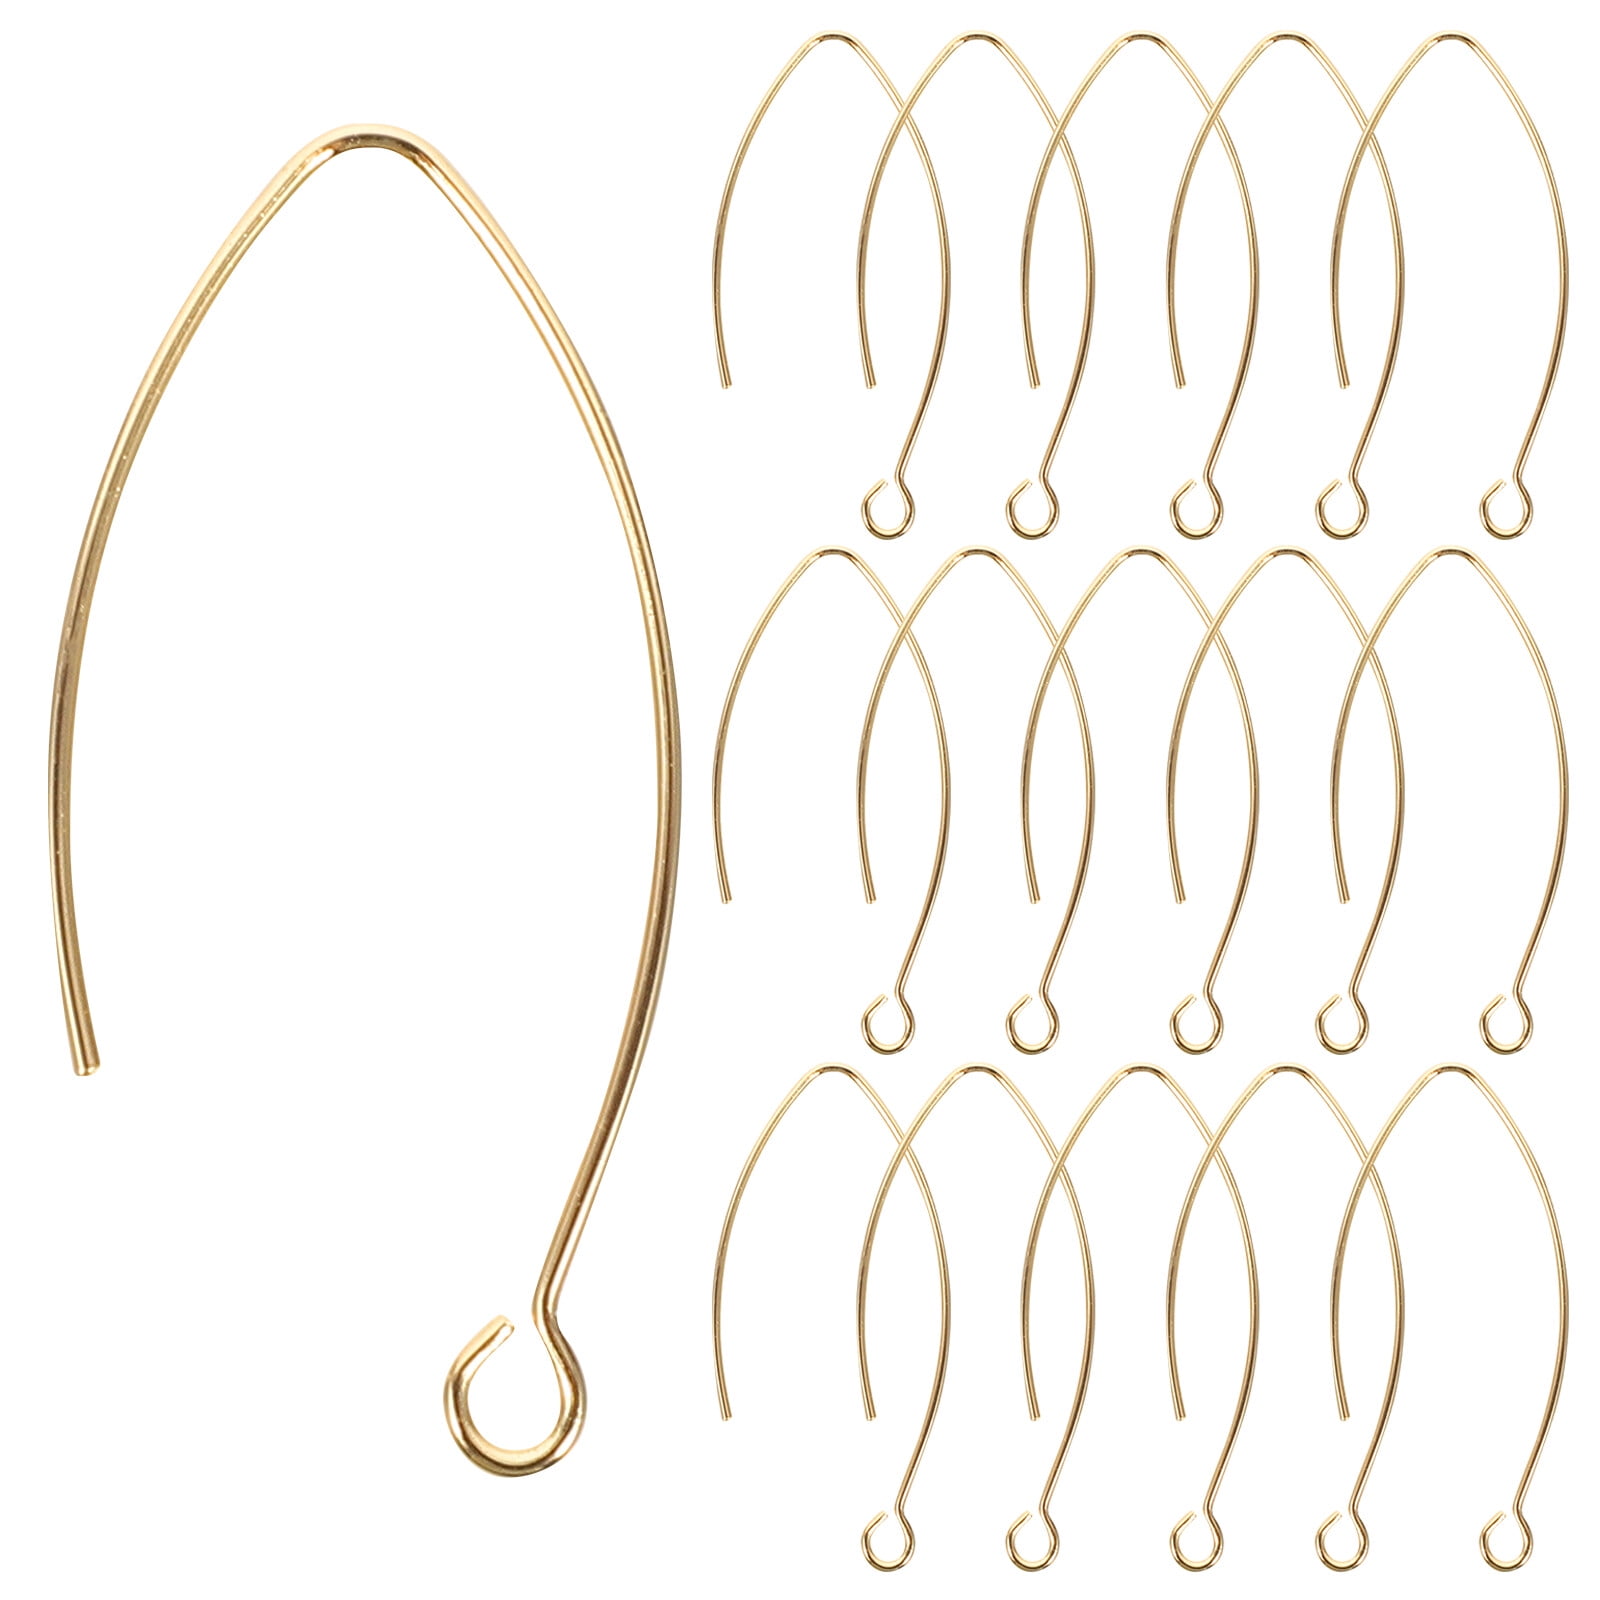 Discover 142+ dangle earring hooks